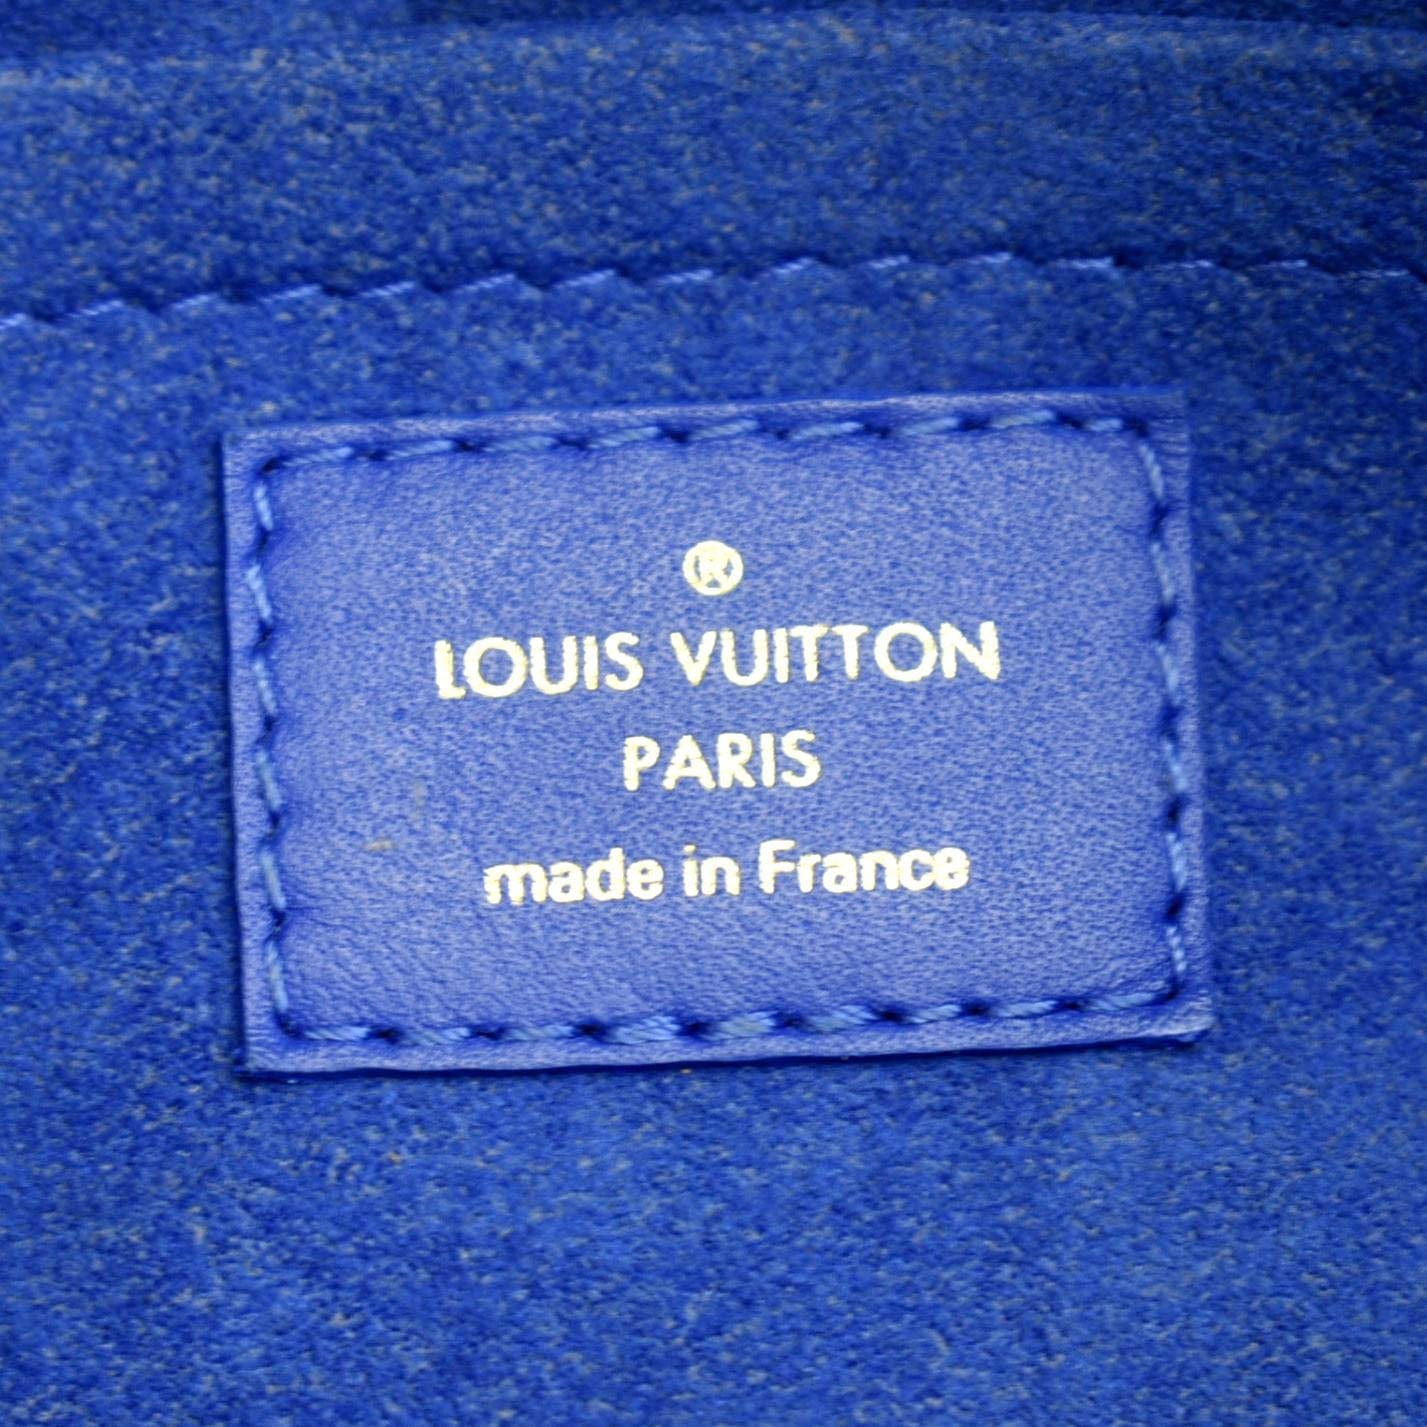 LOUIS VUITTON Calfskin New Wave Camera Bag Porcelain Blue 1290641